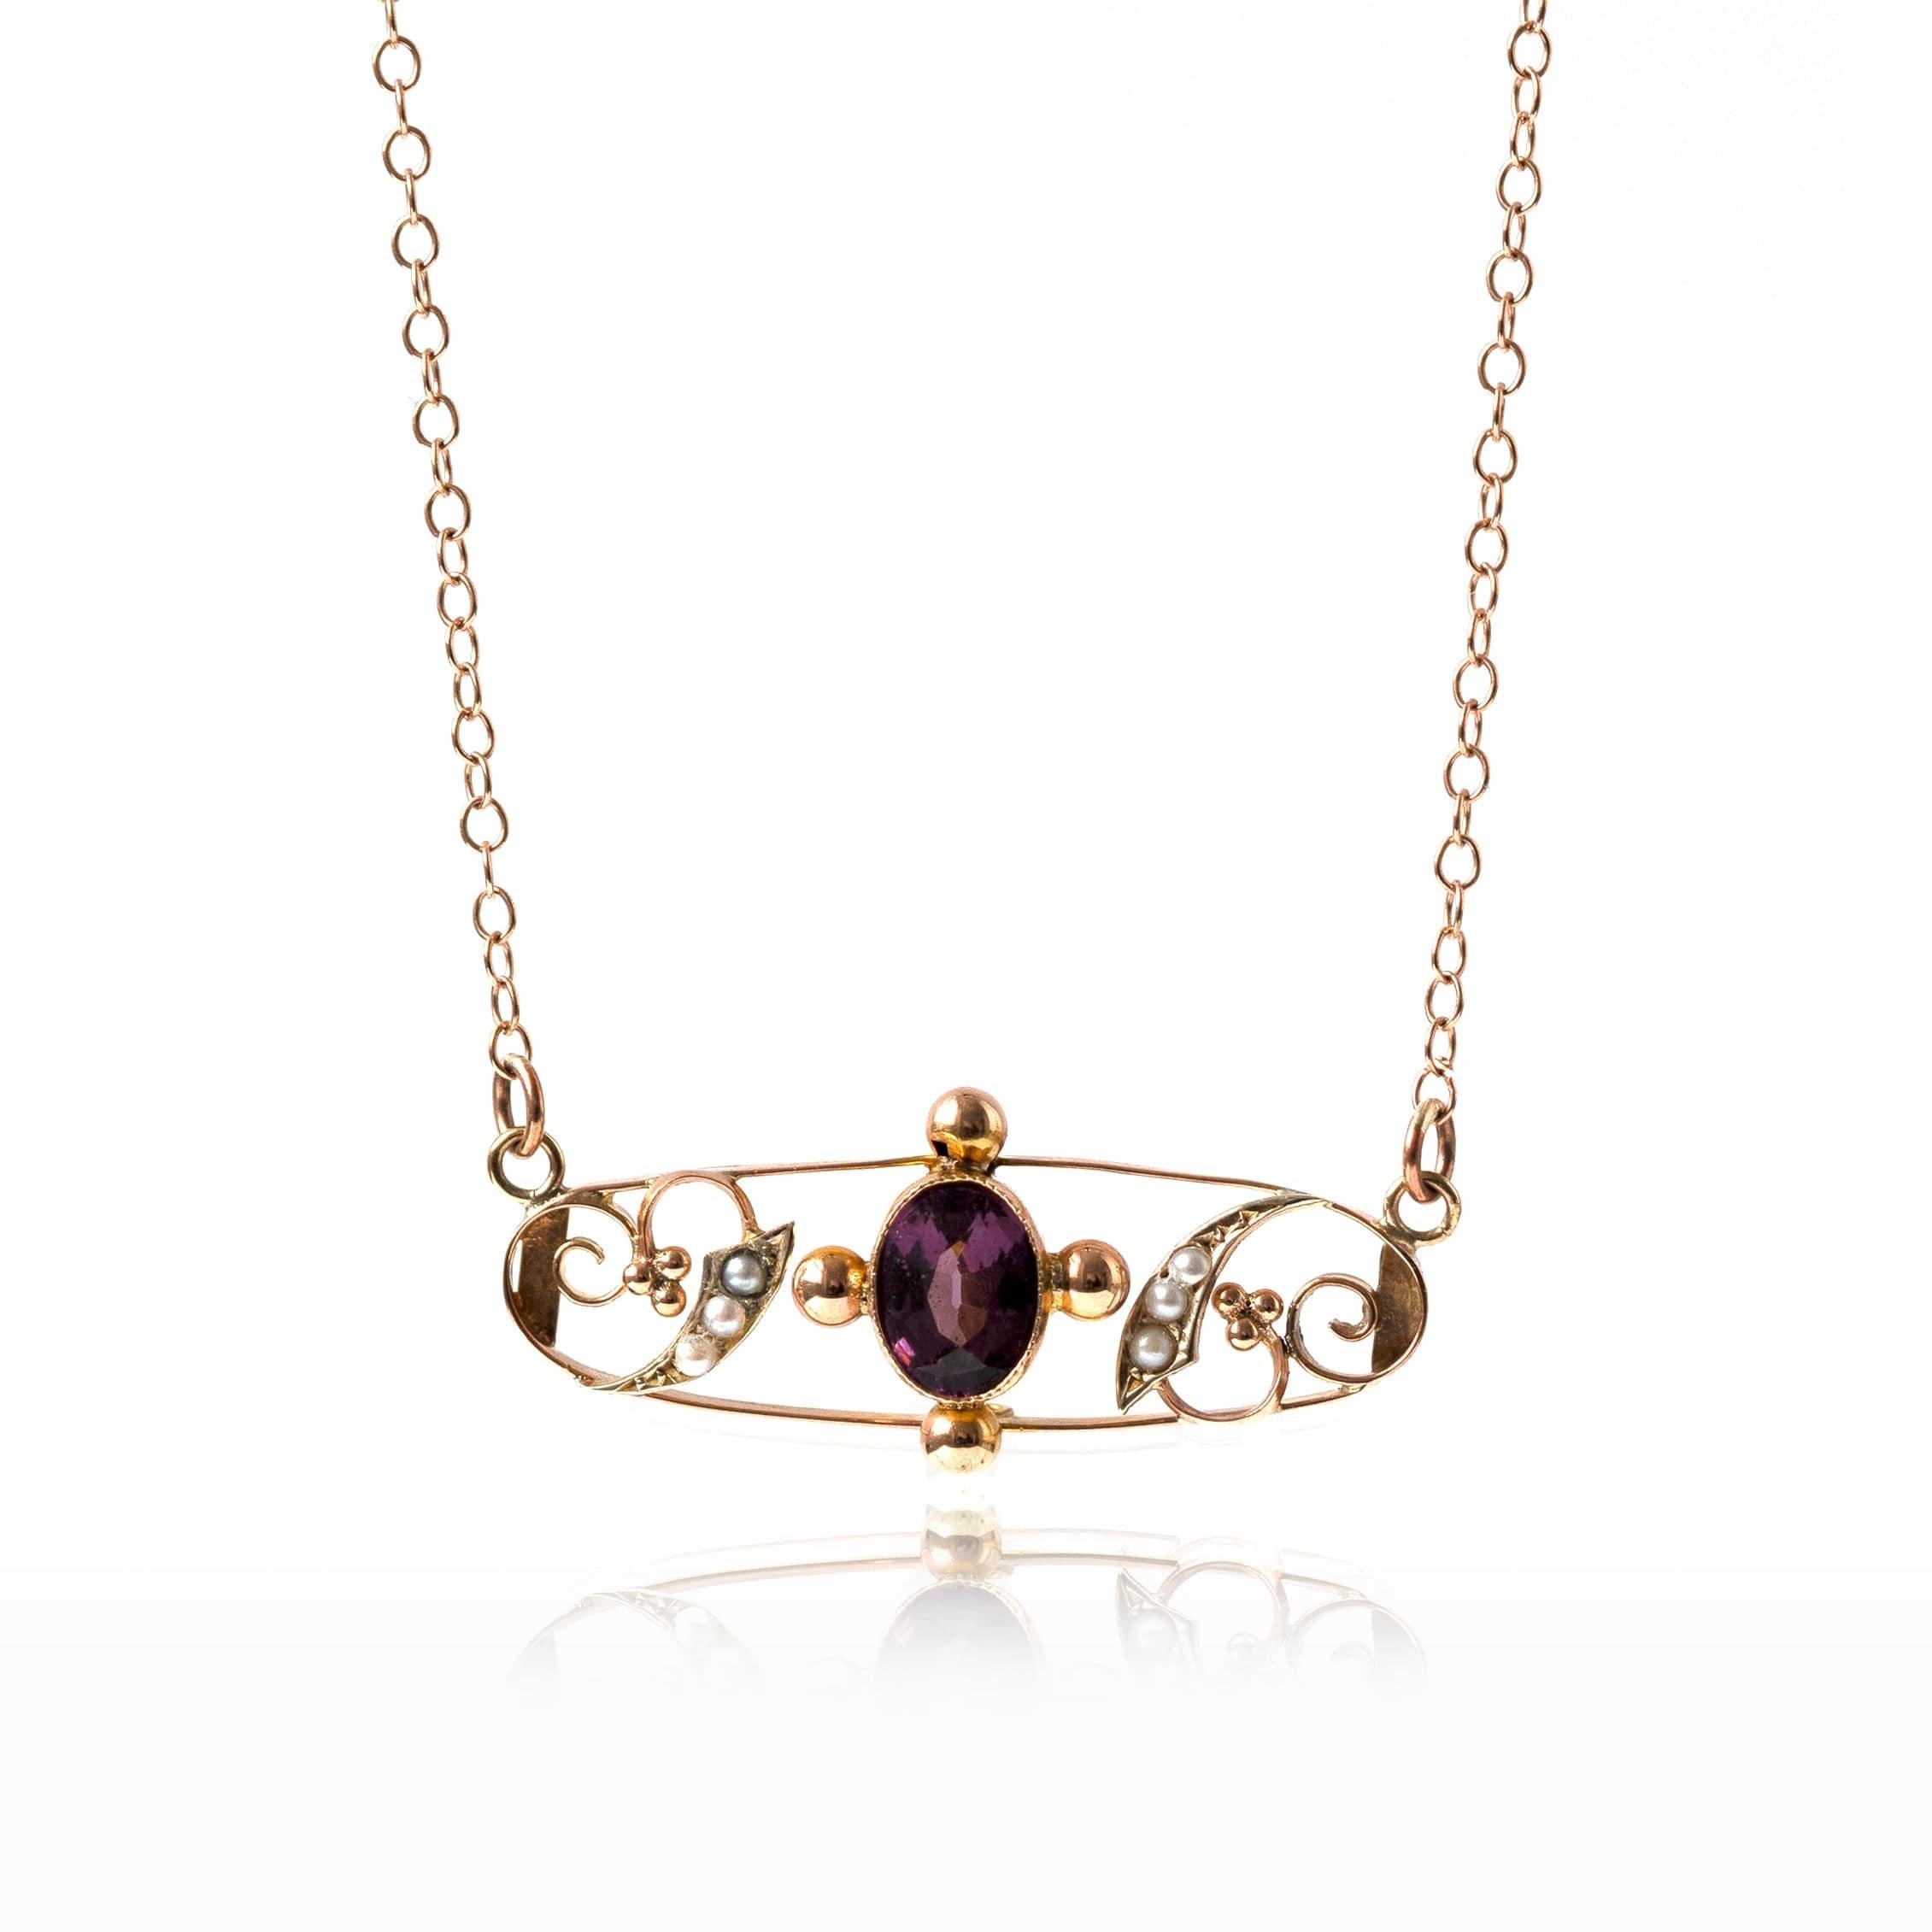 Antike Edwardian 9ct rose gold bar Halskette mit Samen Perlen und Amethyst. Im viktorianischen Zeitalter wurden Perlen mit einer Reihe von Symbolen wie Unschuld, Reinheit, Demut und Harmonie assoziiert. 

Dieses Stück wurde von unserem erfahrenen